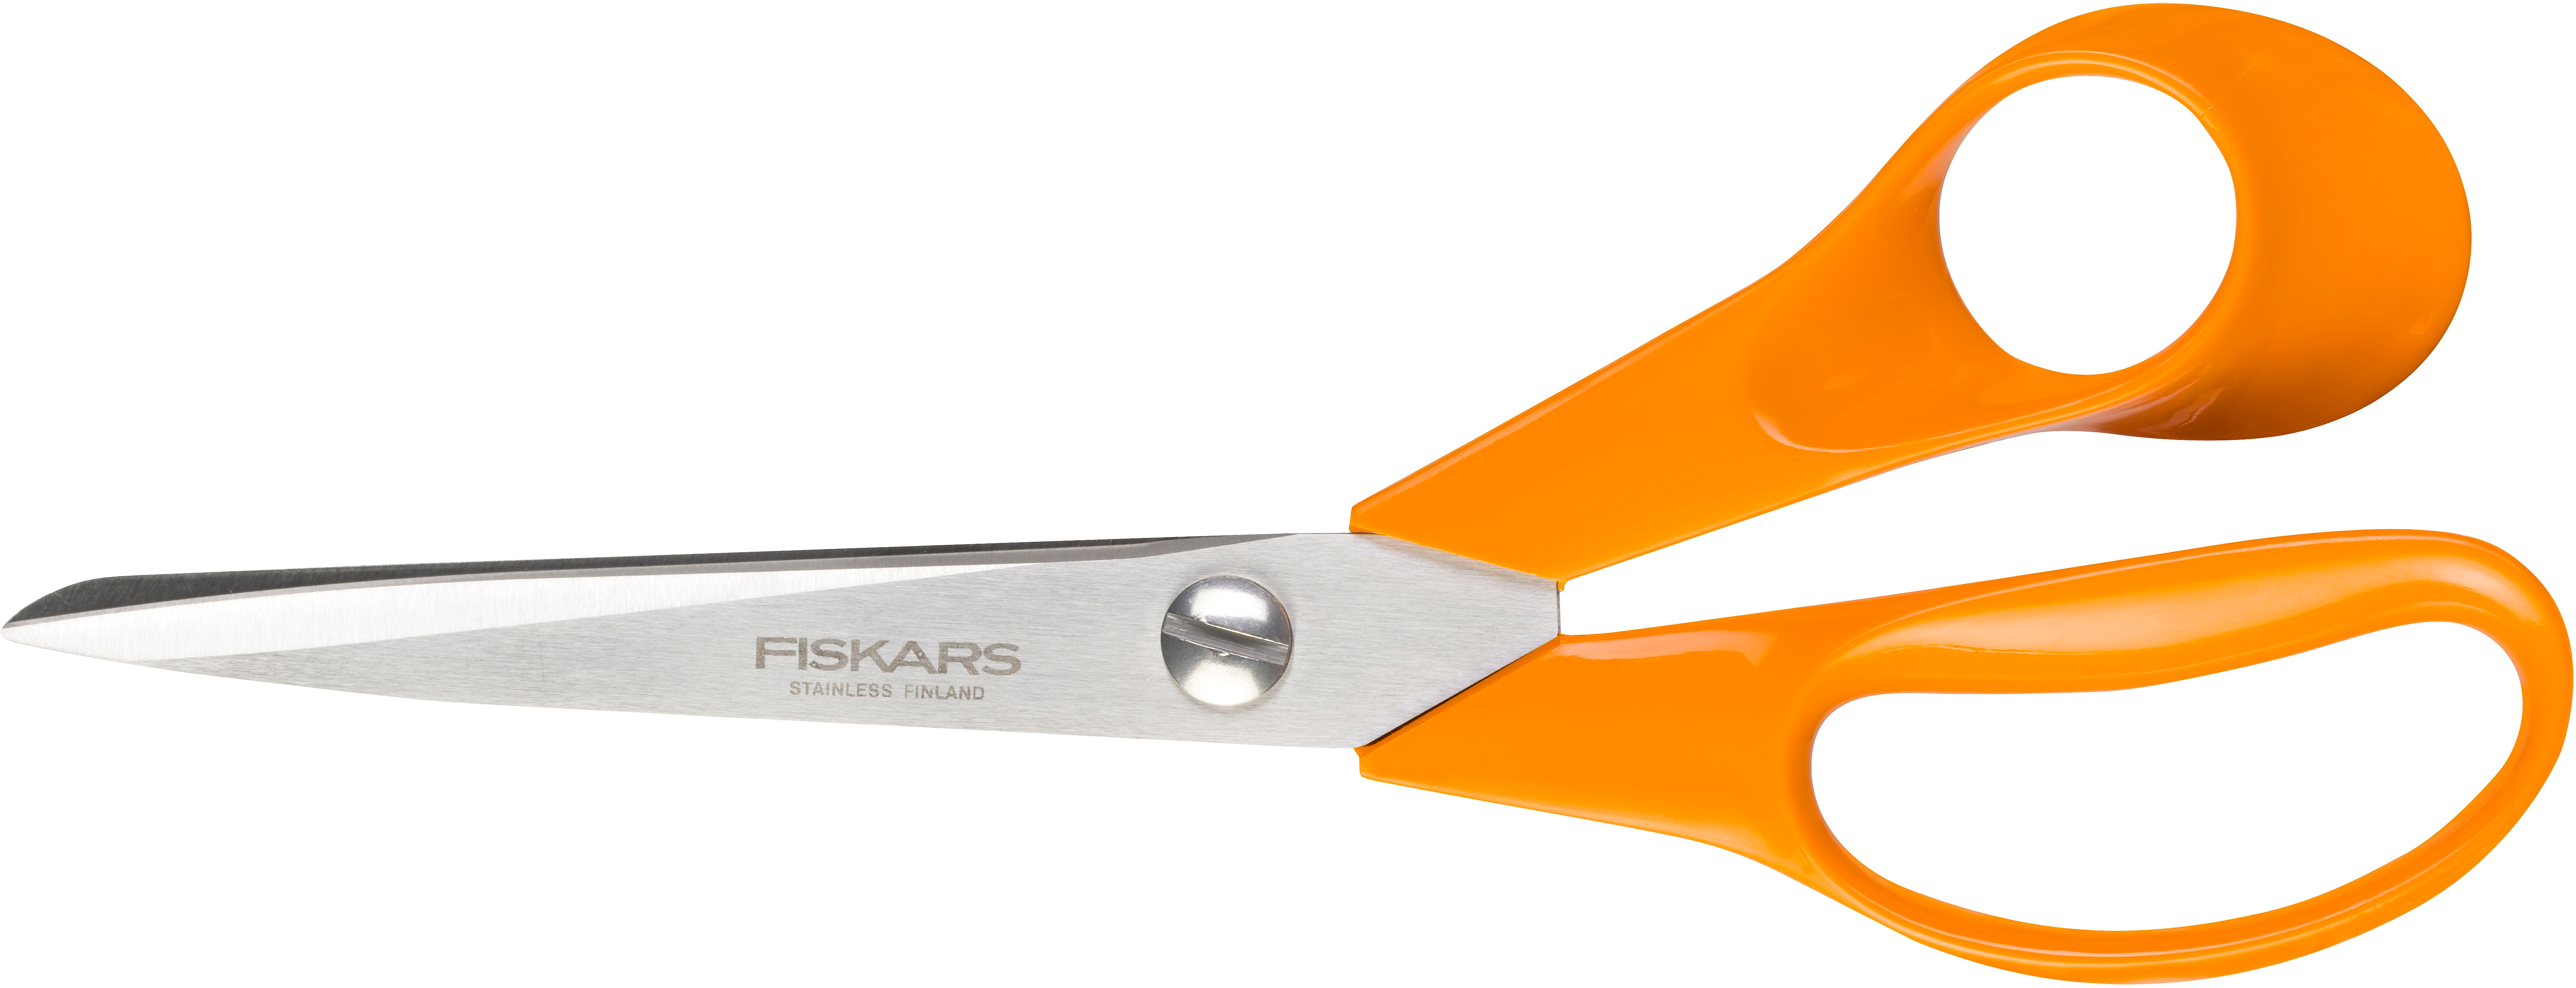 Fiskars Classic universalsax, 21 cm